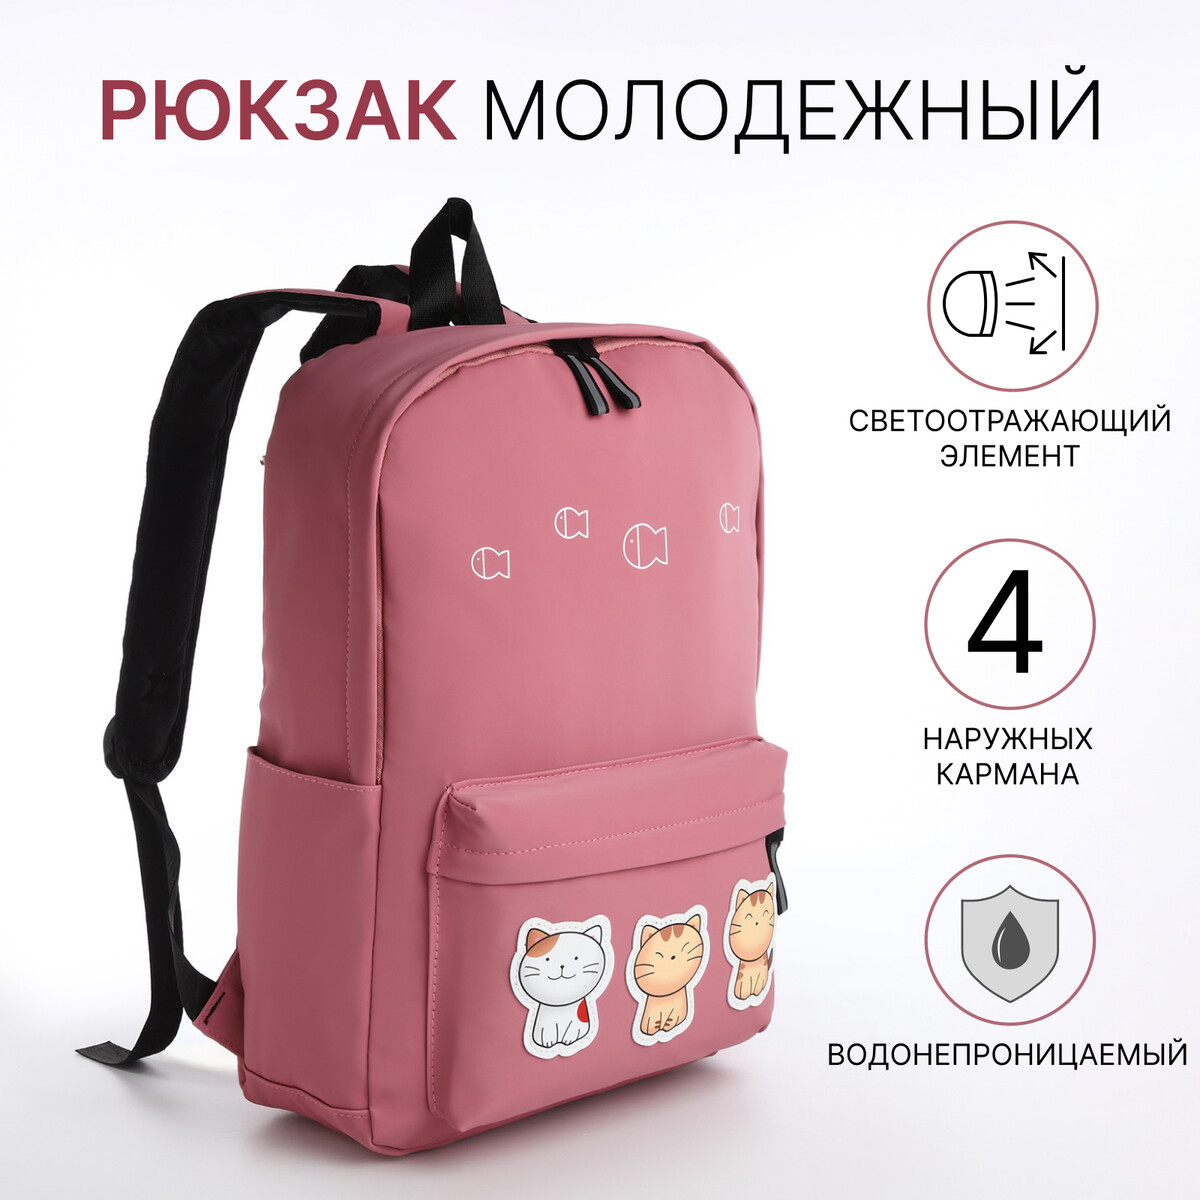 Рюкзак молодежный из текстиля на молнии, 4 кармана, цвет розовый рюкзак молодежный на молнии 4 кармана бордовый